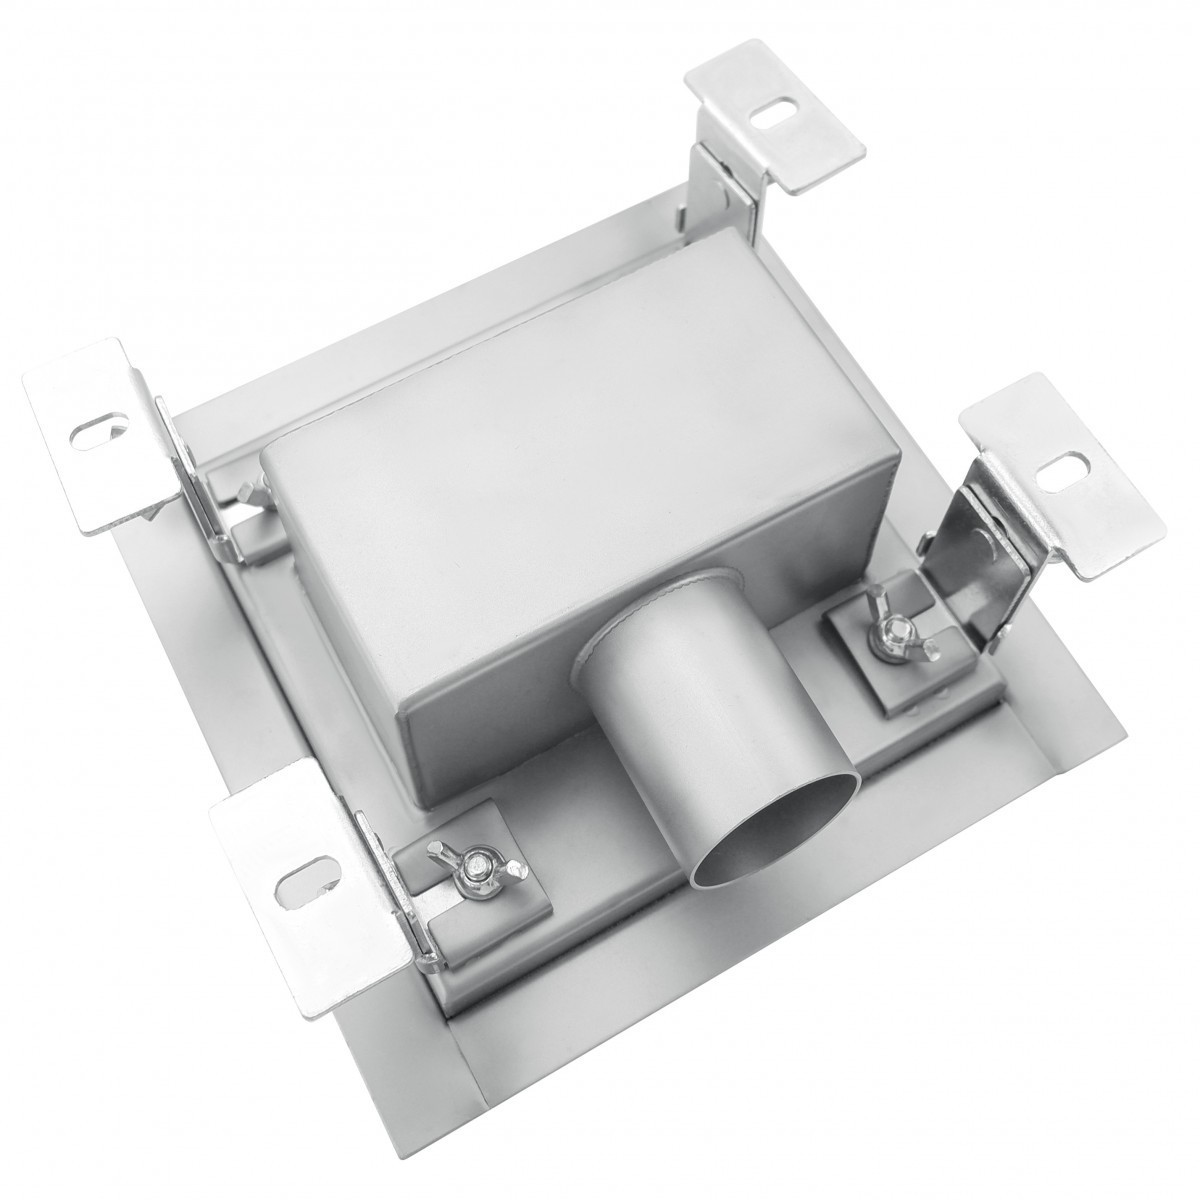 Canaletta scarico doccia QUADRATA reversibile piastrellabile in acciaio INOX | 15x15